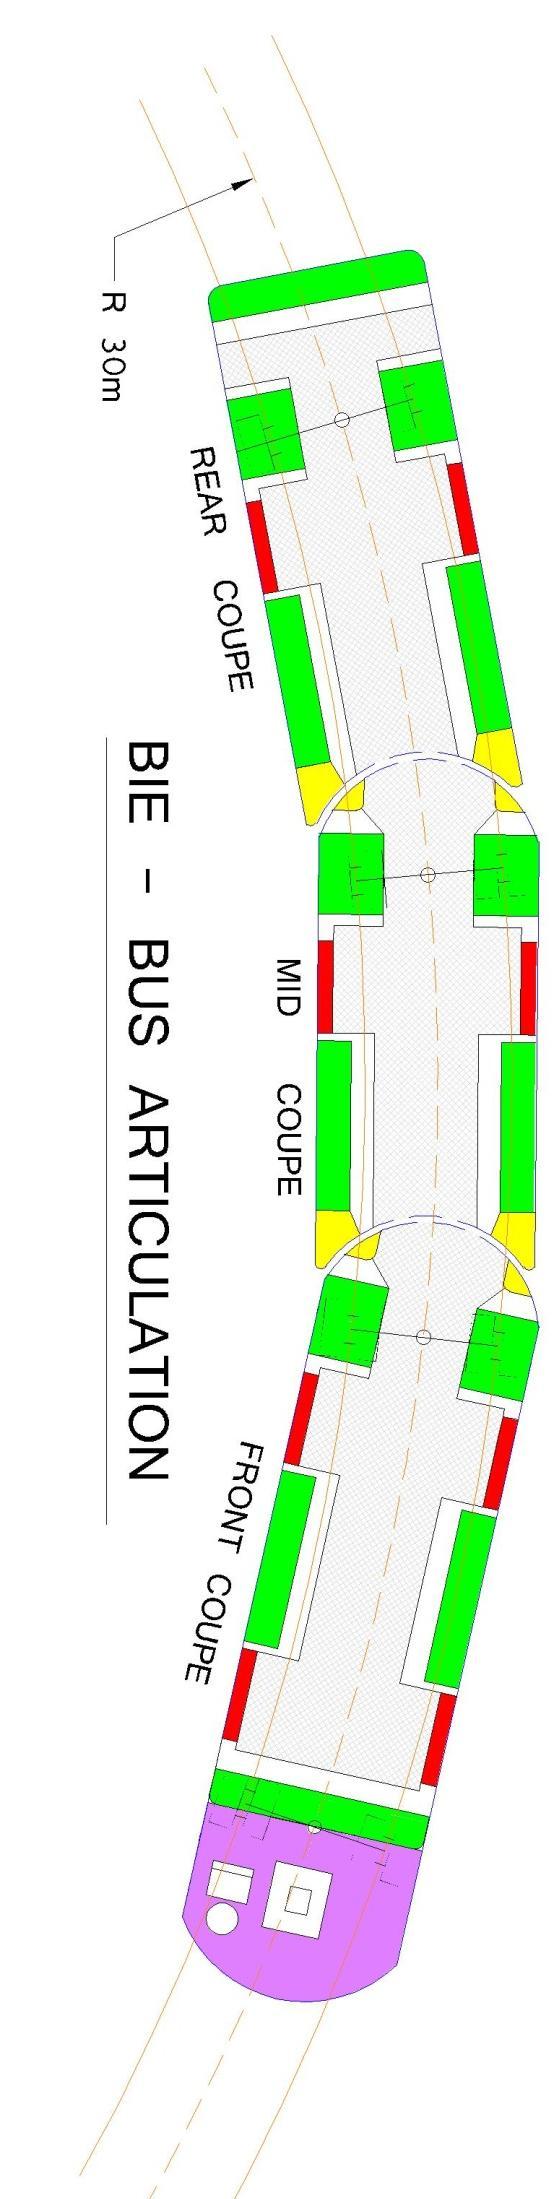 Bie-Bus: Concentric Articulation